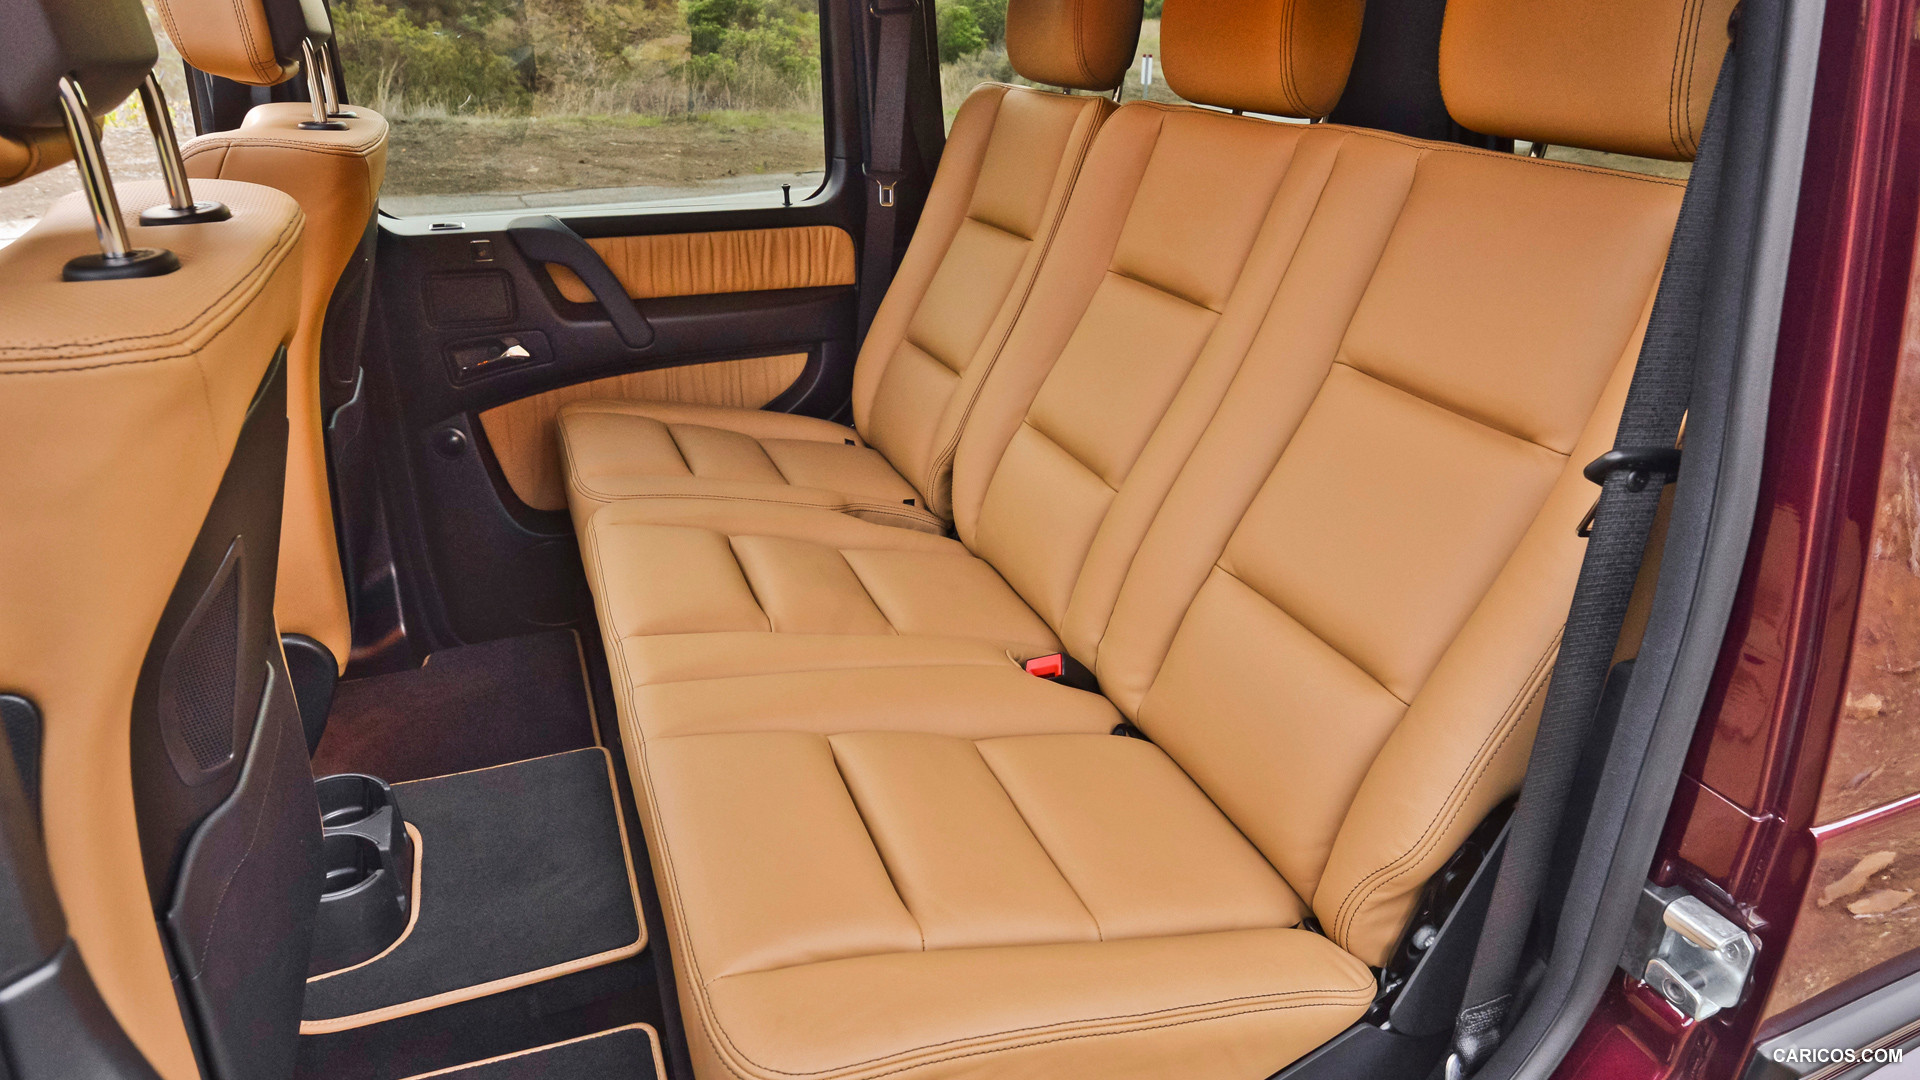 2013 Mercedes-Benz G550  - Interior Rear Seats, #69 of 73